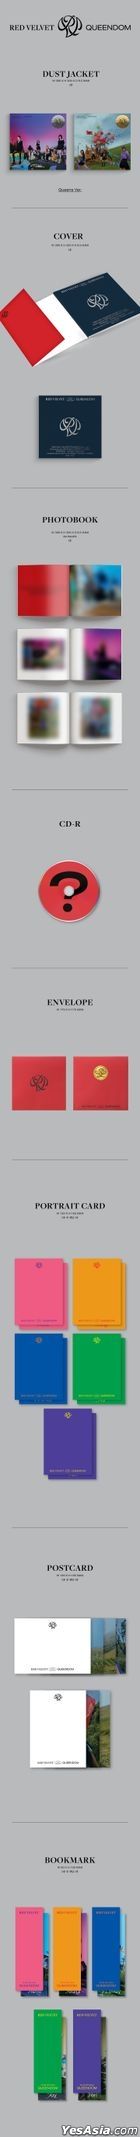 Red Velvet Mini Album Vol. 6 - Queendom (Queens Version)